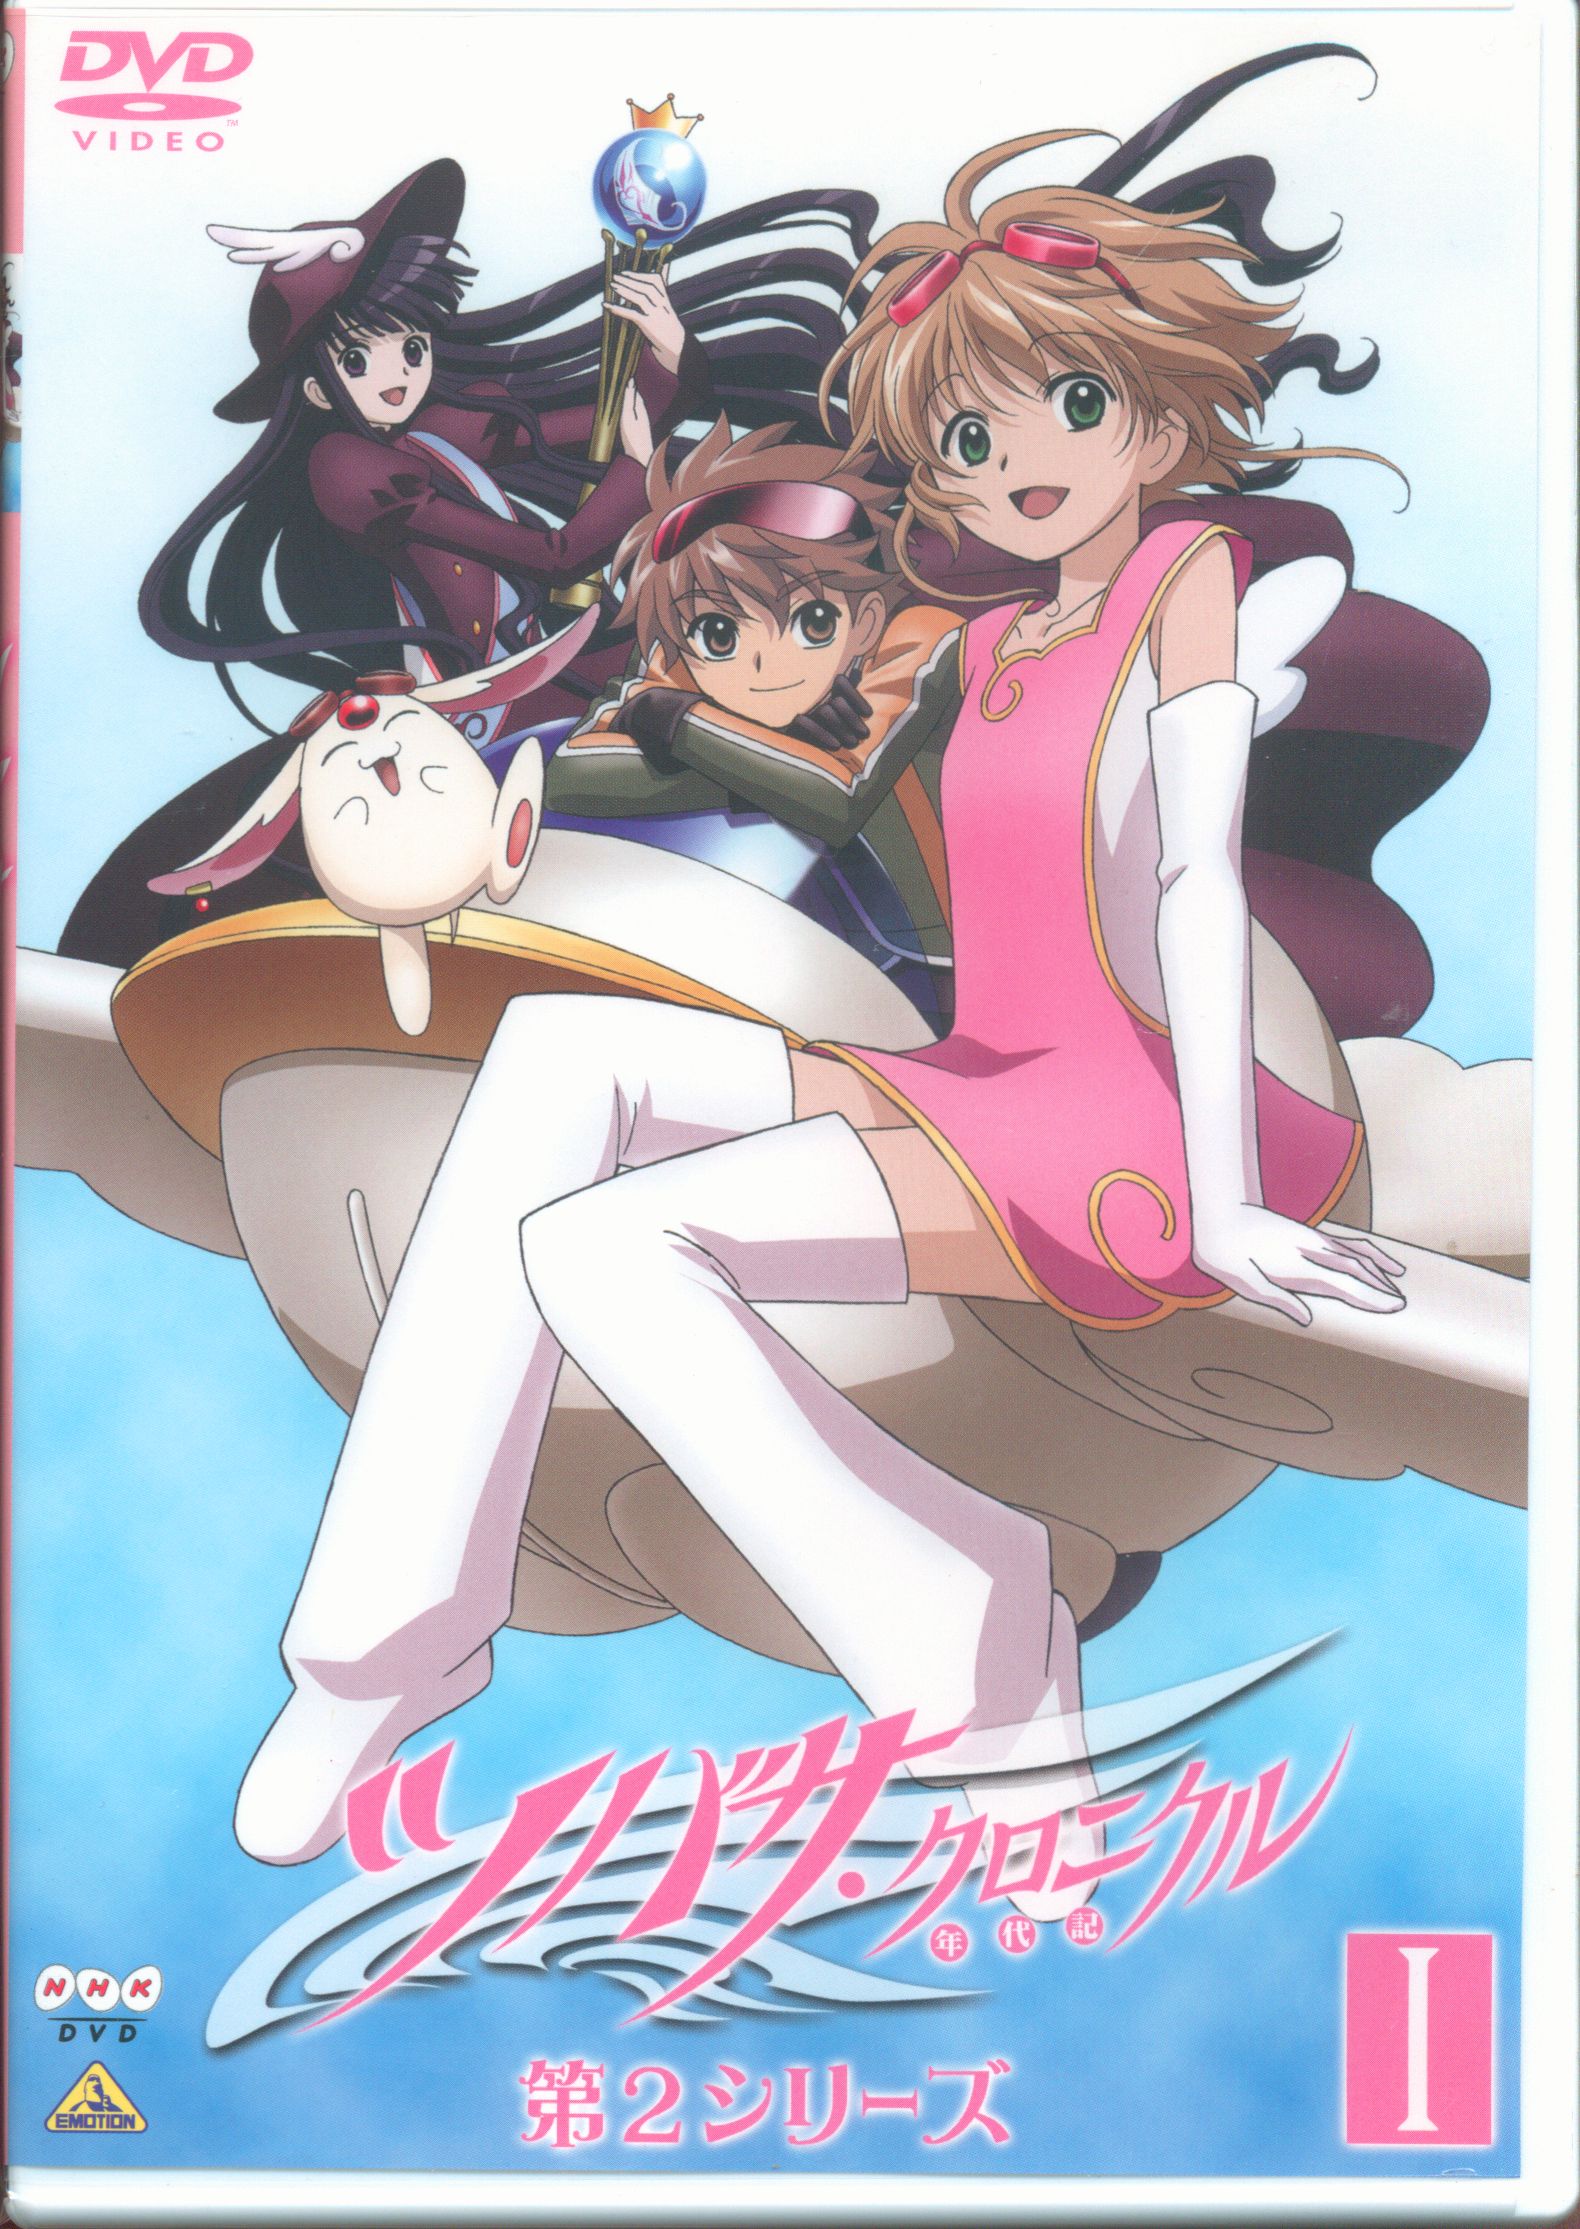 ツバサ・クロニクル DVD全巻セット - ブルーレイ